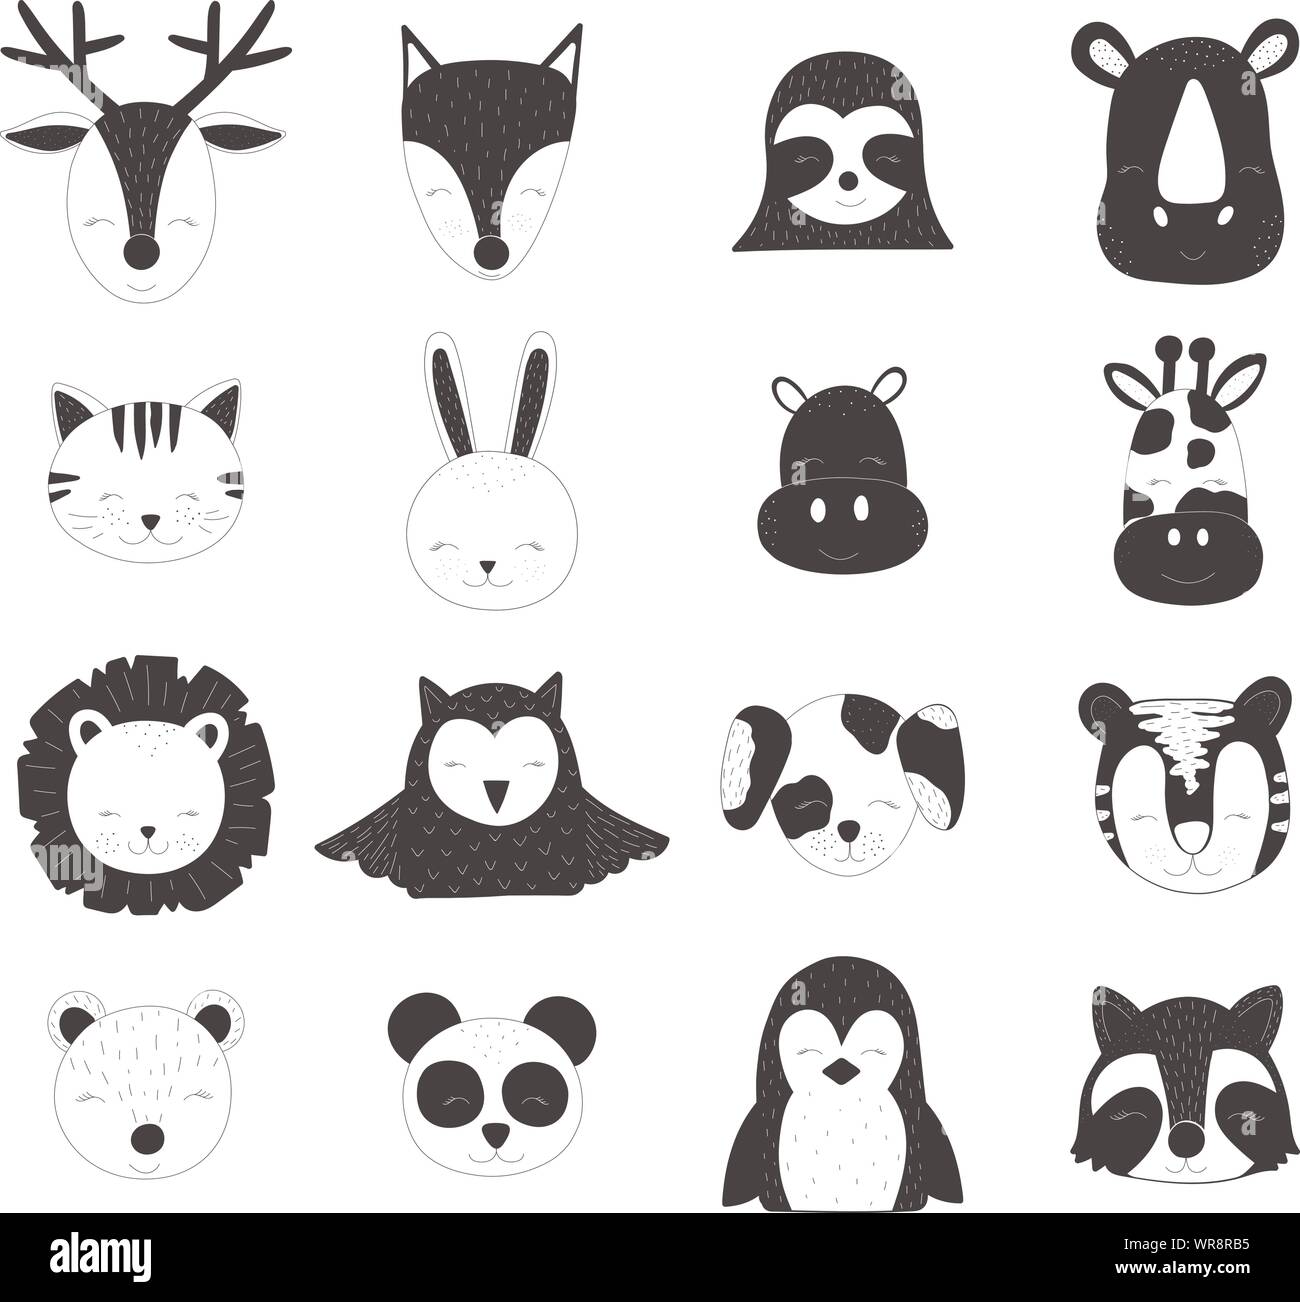 Vettore scandinavo bambini illustrazione. Disegnate a mano simpatici animali nero per il bambino. Cervi, volpi, sloth, rinoceronte, cat, lepre, ippopotamo, giraffe, lio Illustrazione Vettoriale